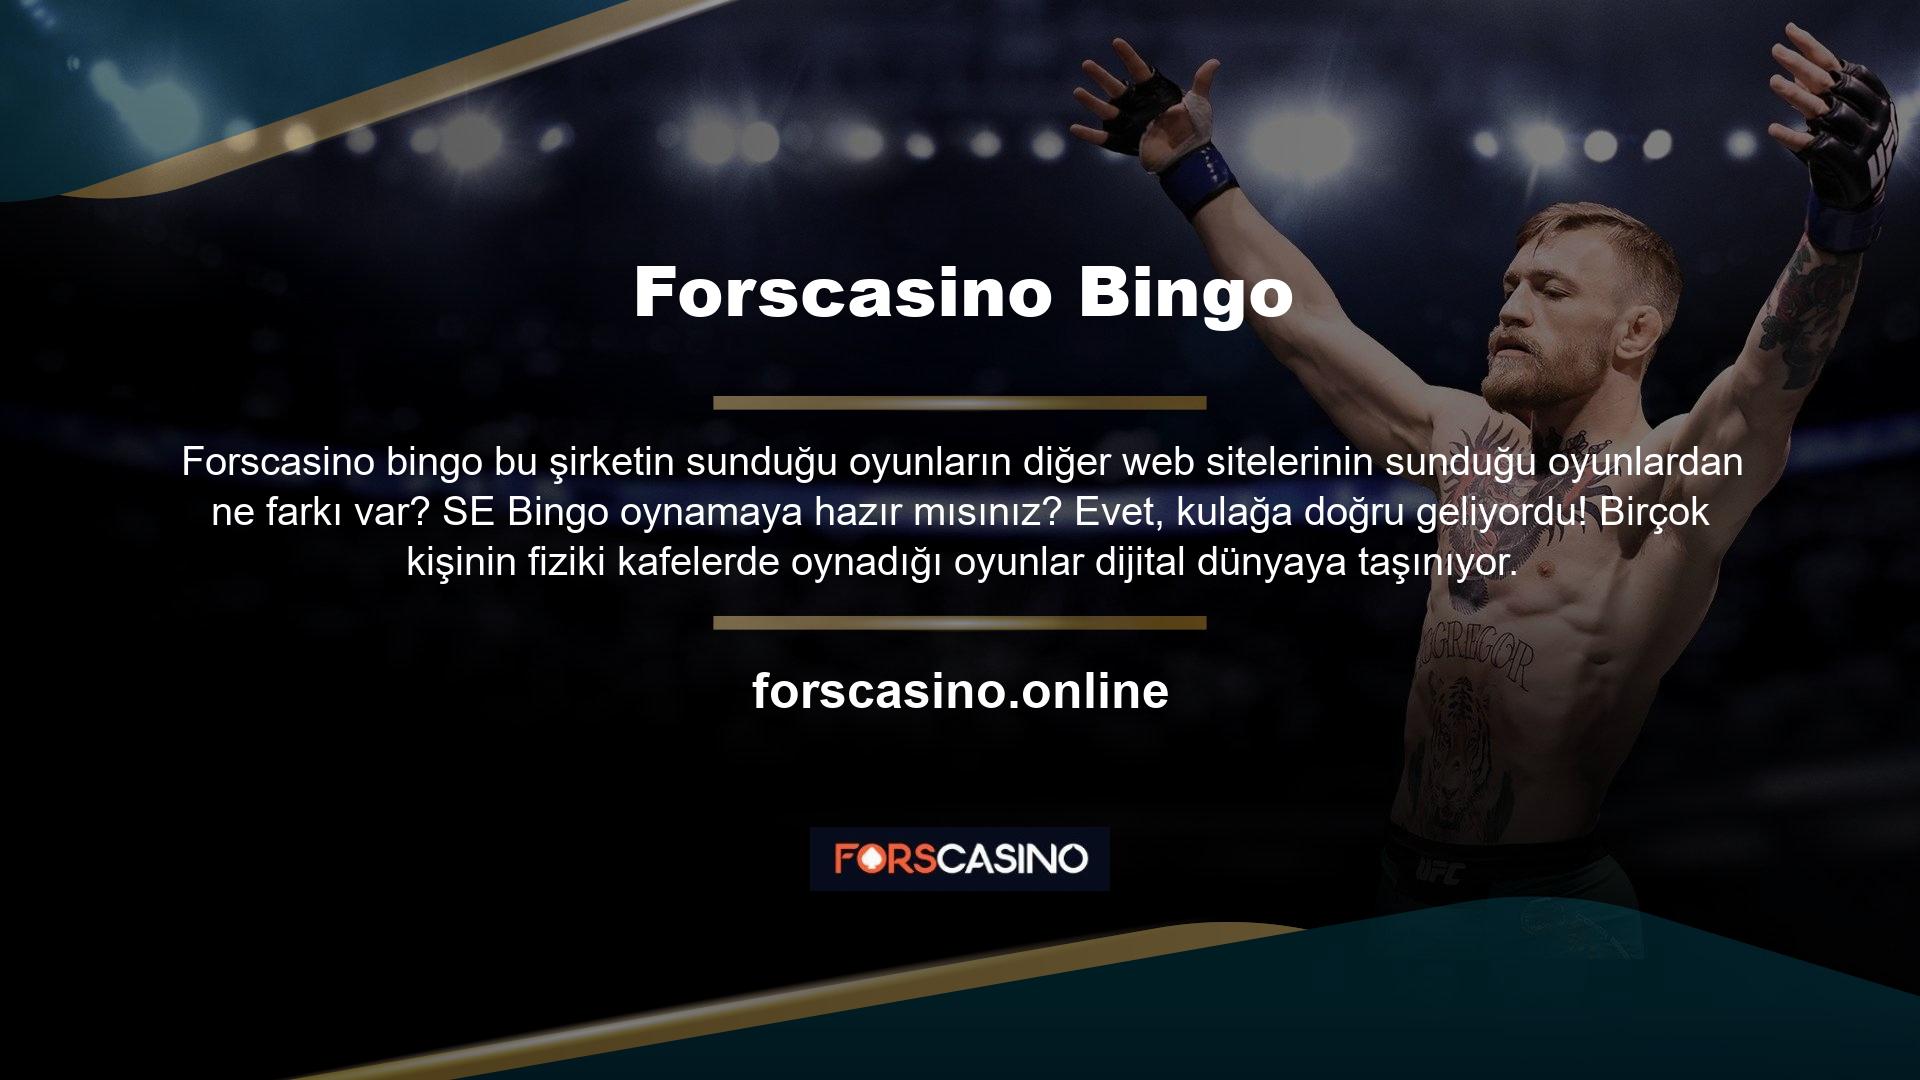 Ayrıca Forscasino Bingo'ya katılabilir ve biraz para kazanabilirsiniz